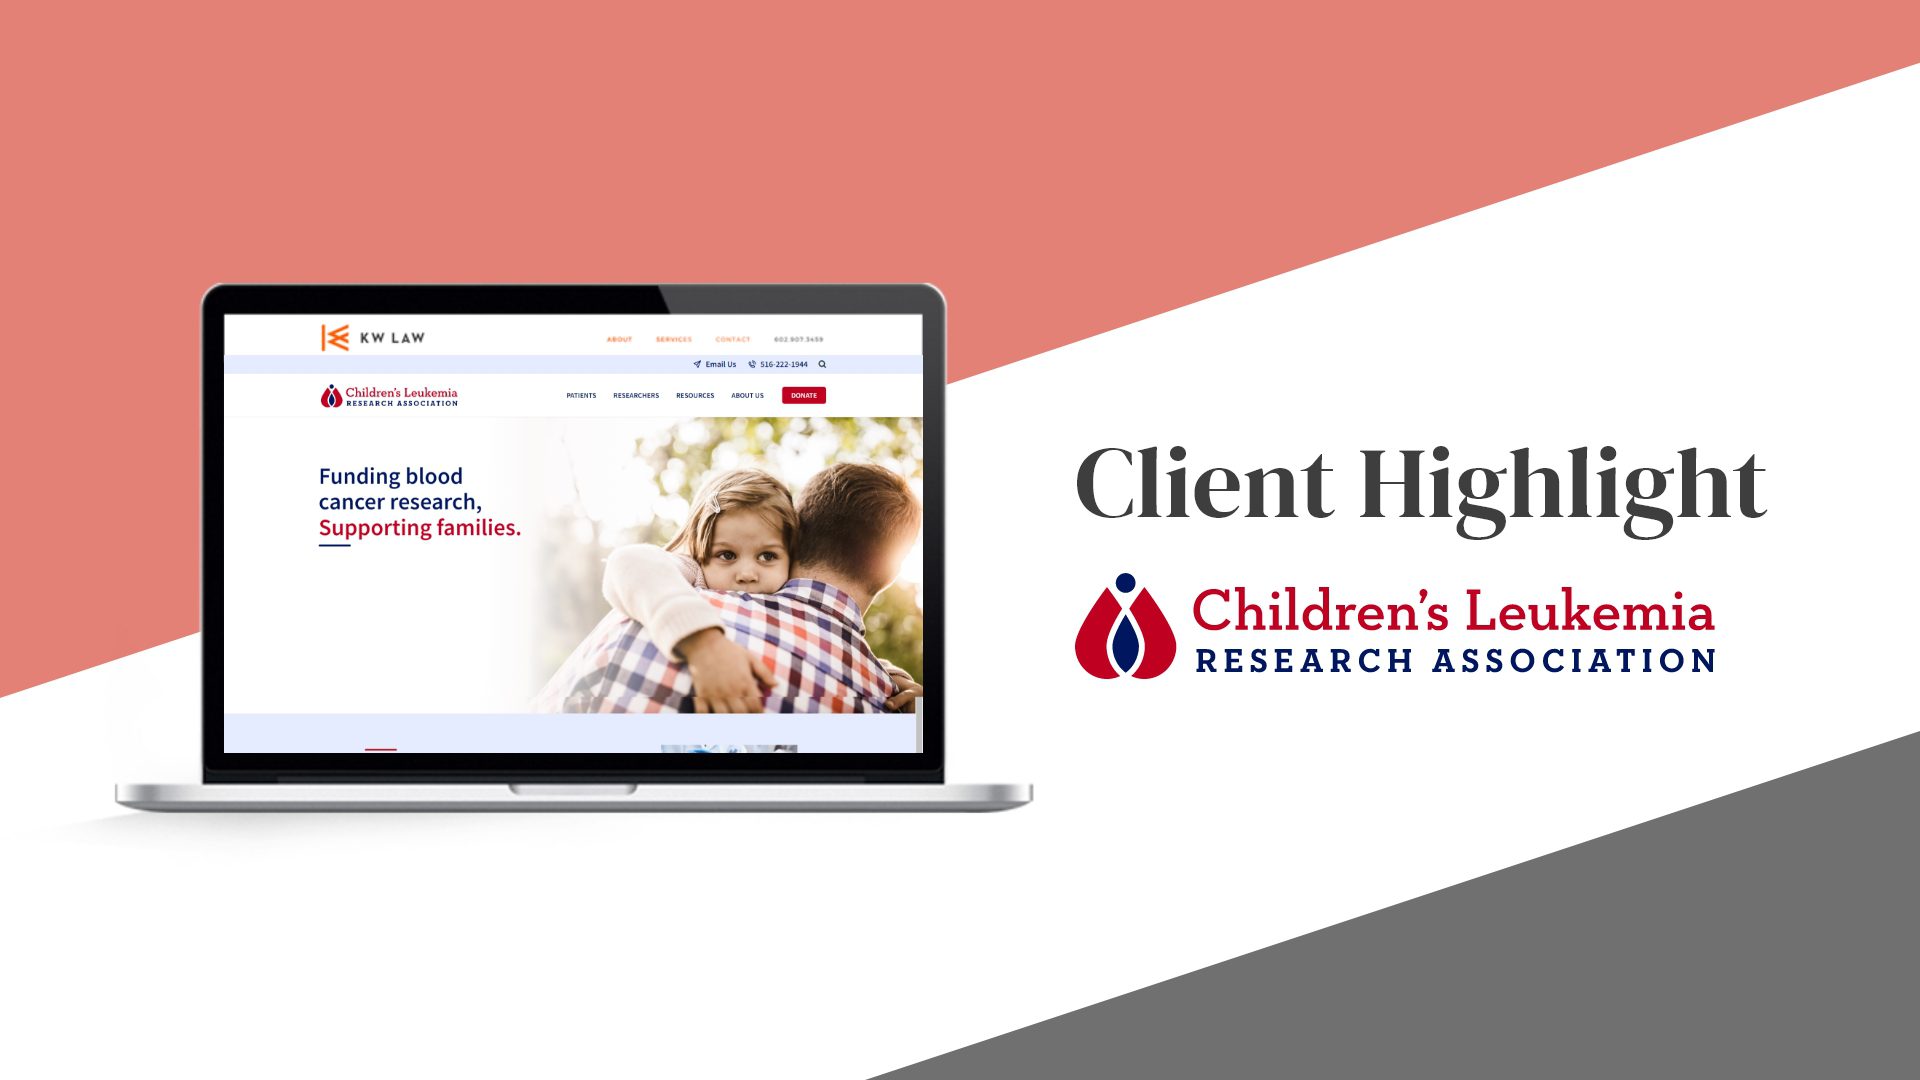 Client Highlight: Children's Leukemia Research Association